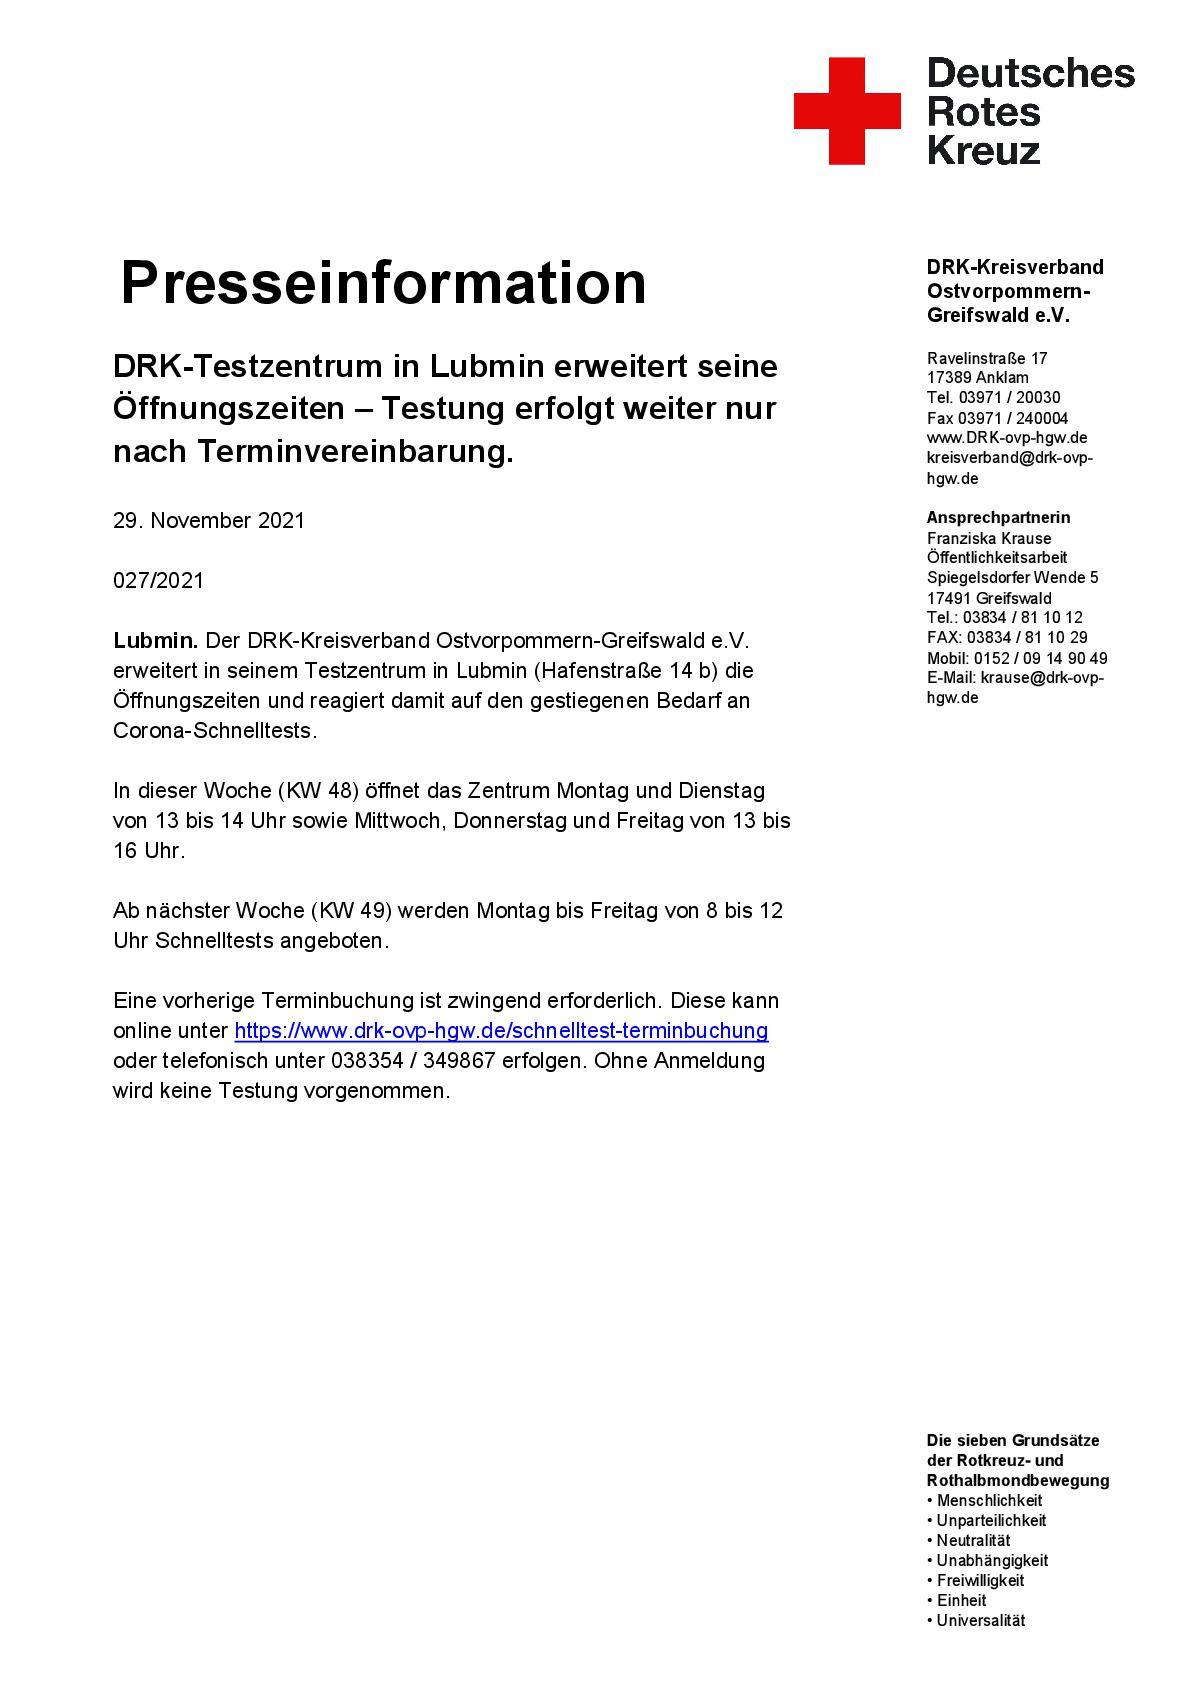 Presseinformation DRK Lubmin Schnelltest-001.jpg